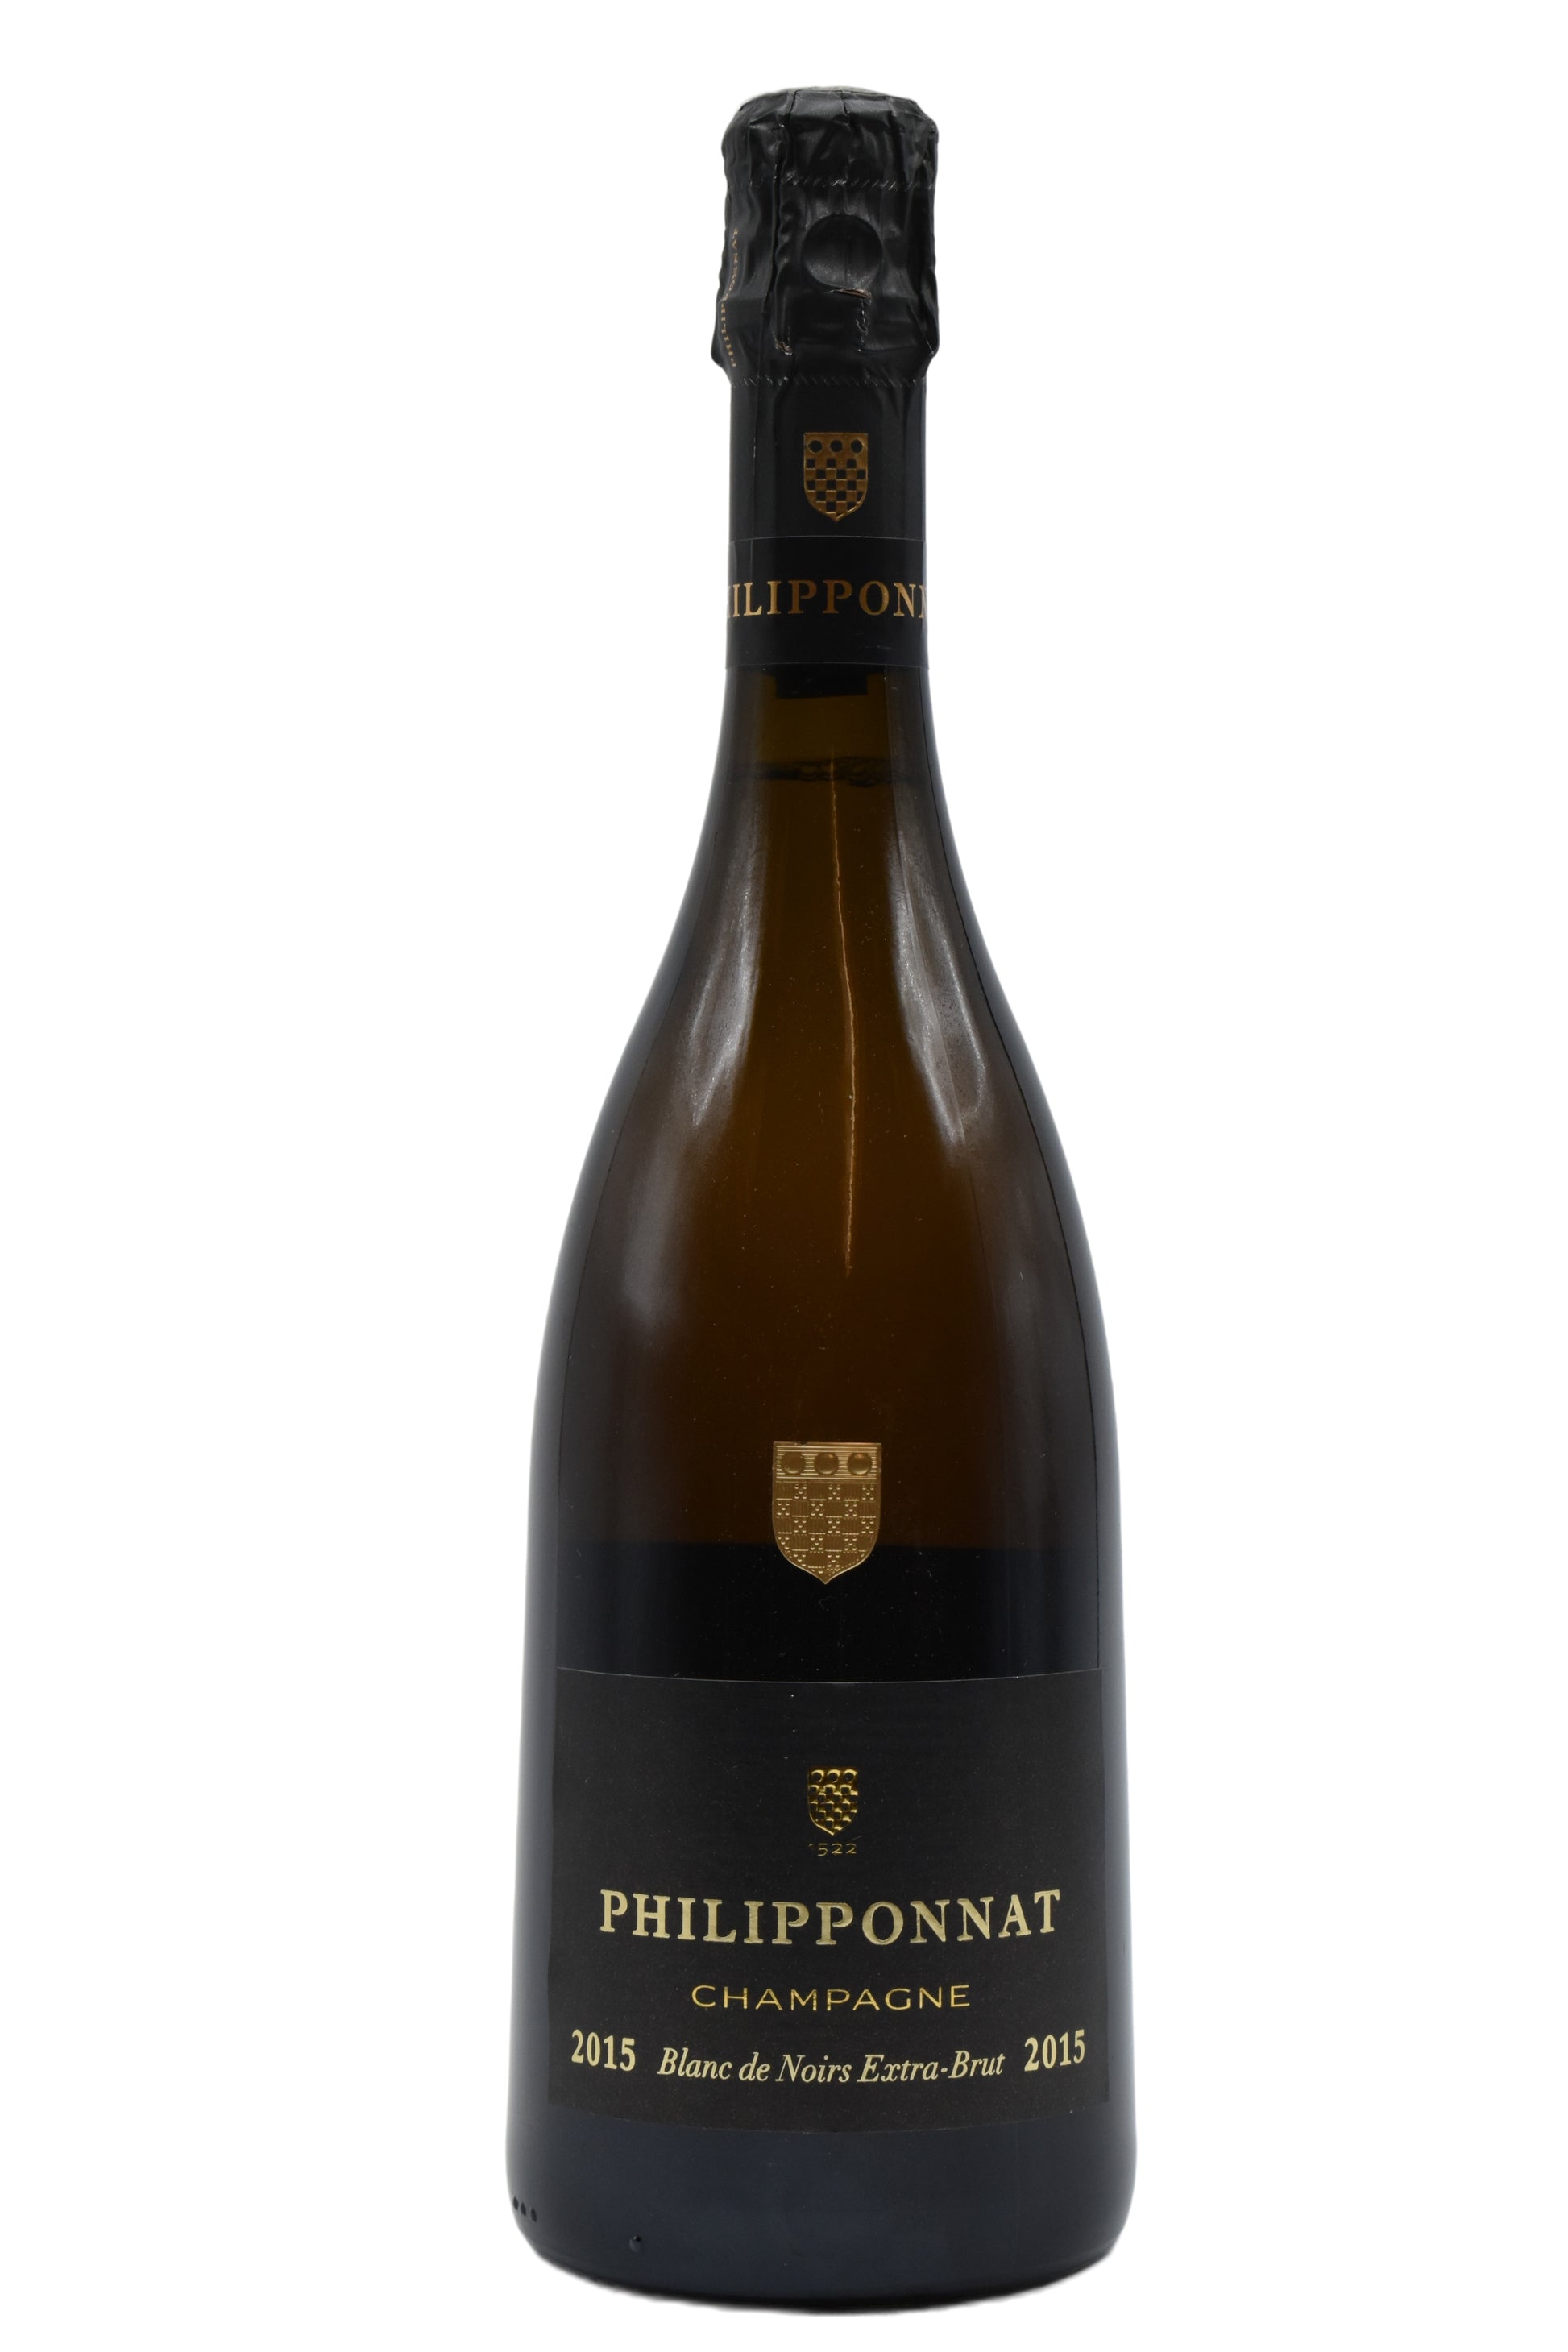 2015 Philipponnat, Champagne Blanc de Noirs 750ml - Walker Wine Co.